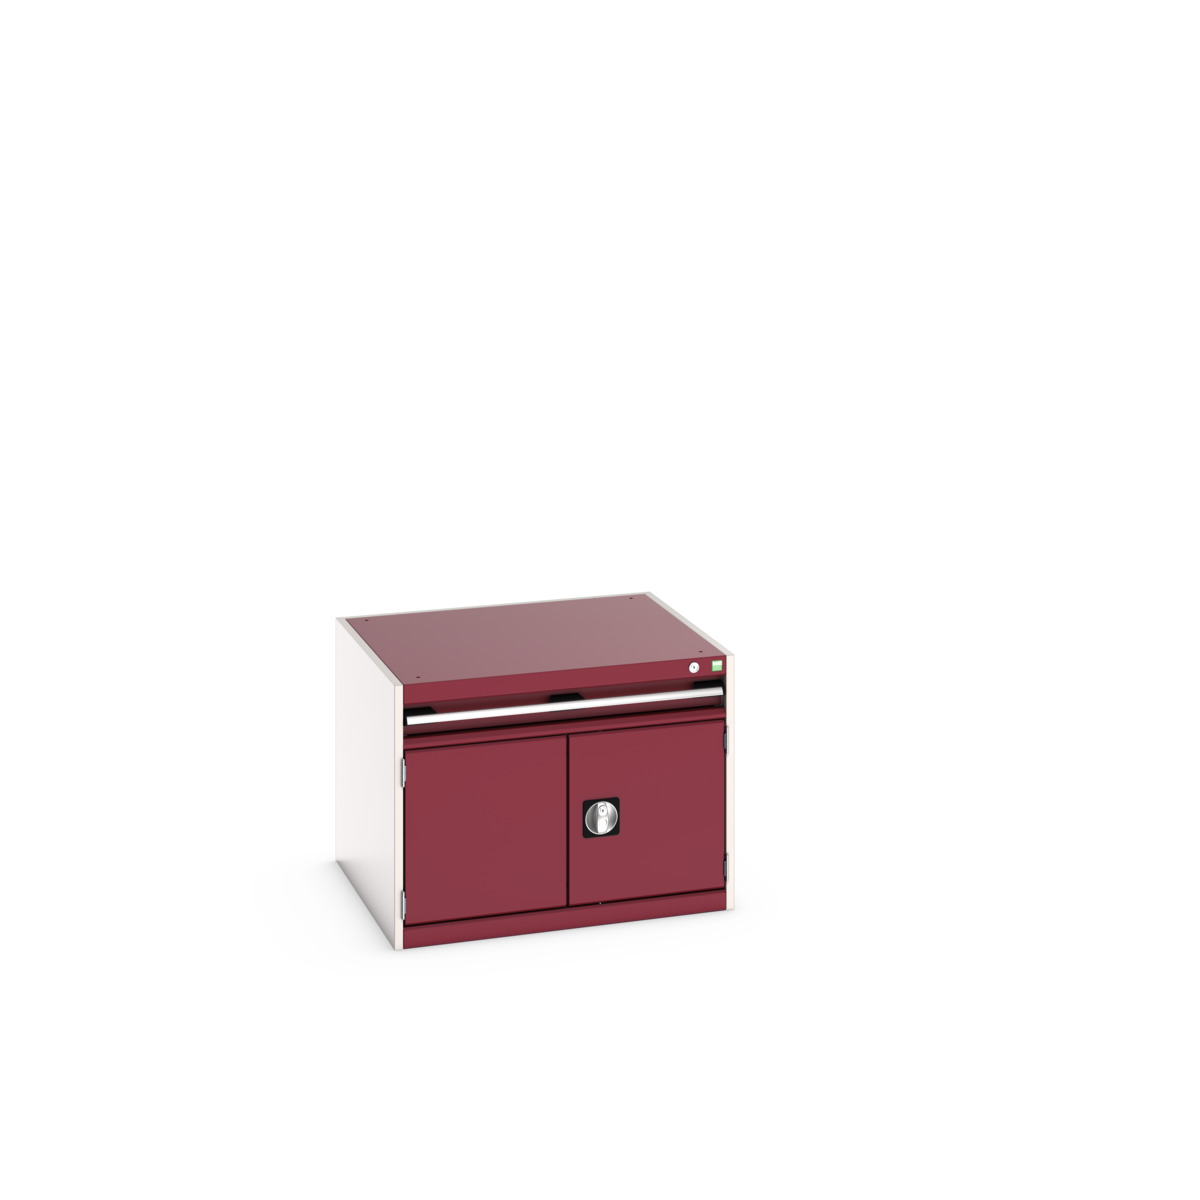 40028089.24V - cubio drawer-door cabinet